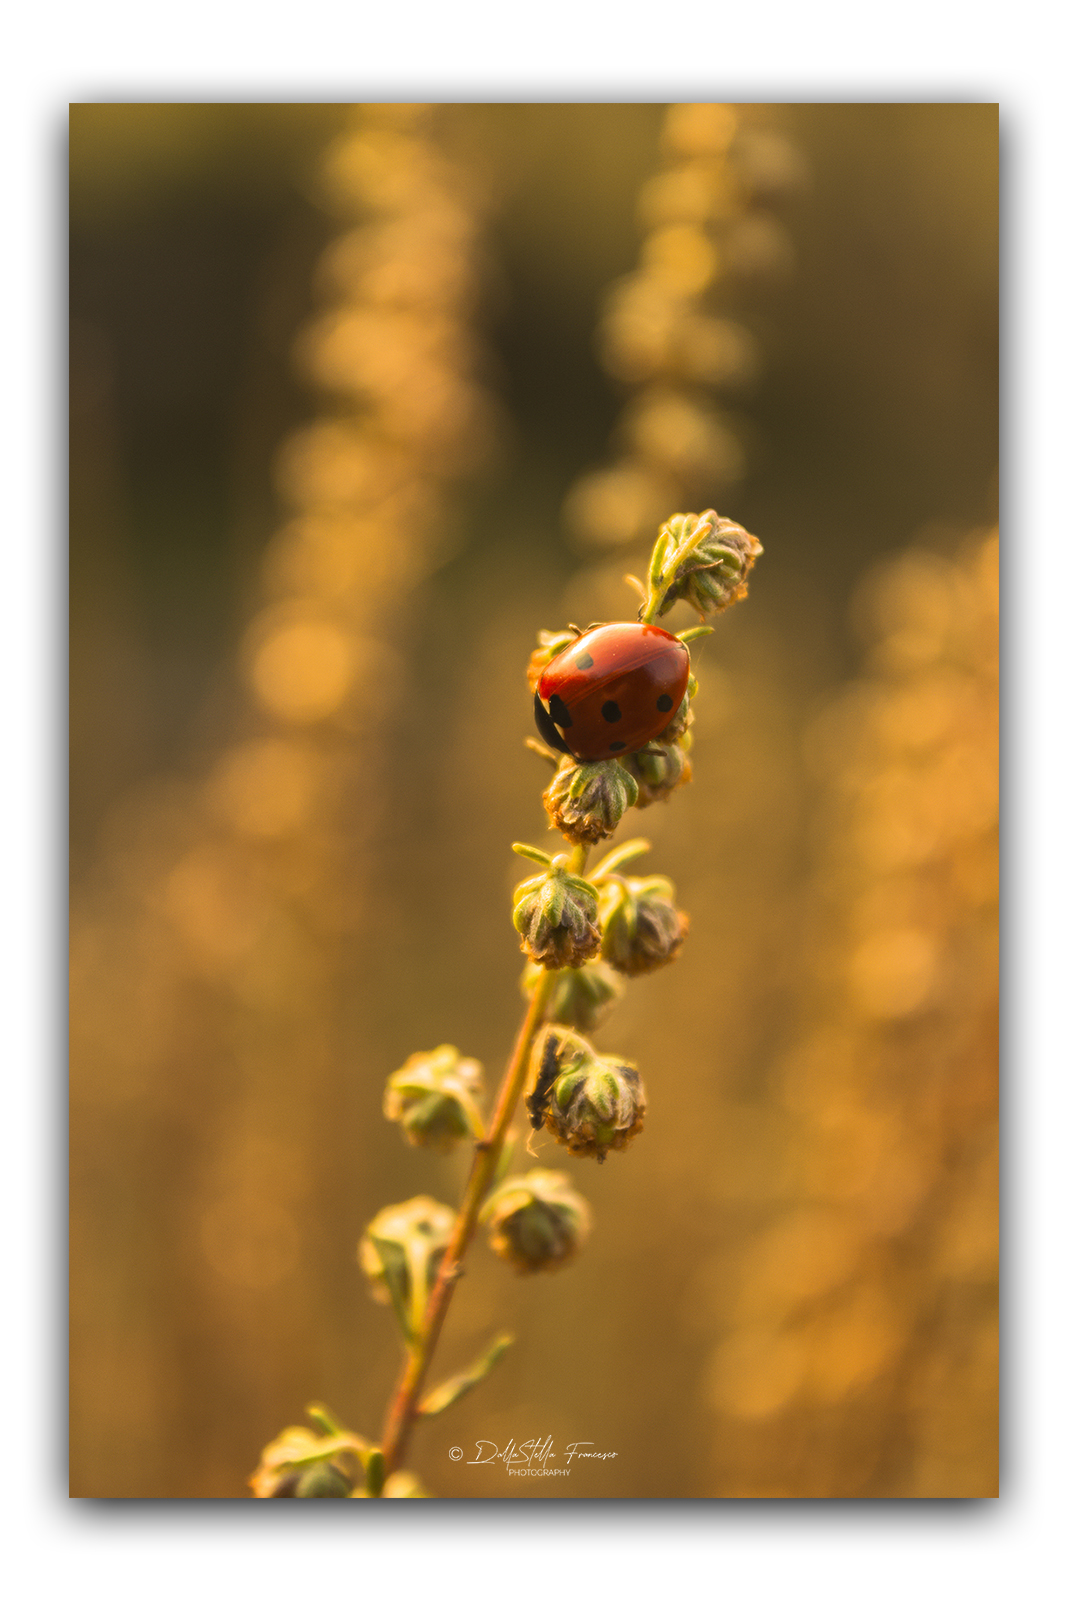 Golden ladybug...